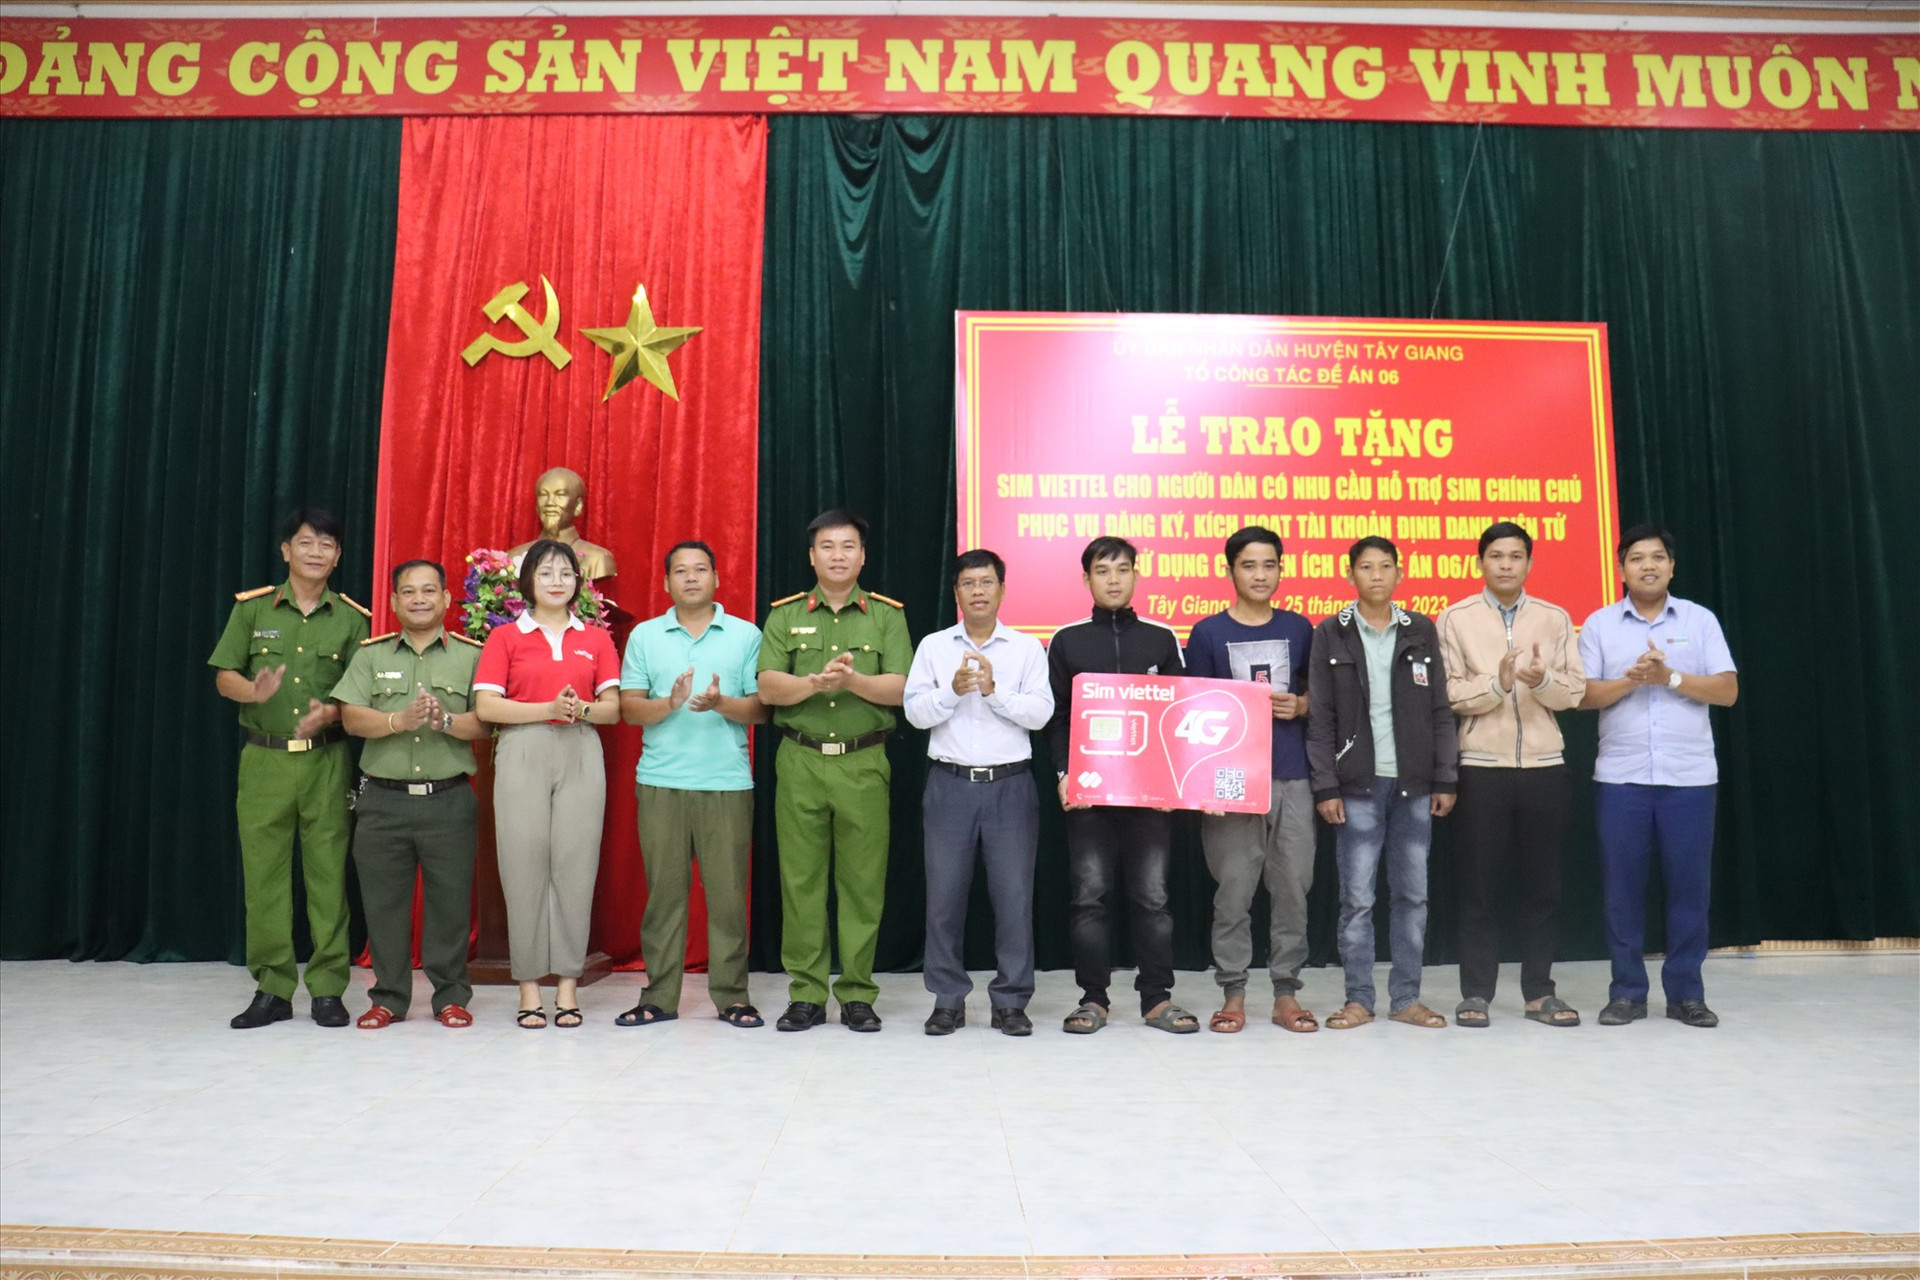 UBND huyện Tây Giang tặng sim chính chủ cho người dân. Ảnh: T.Q